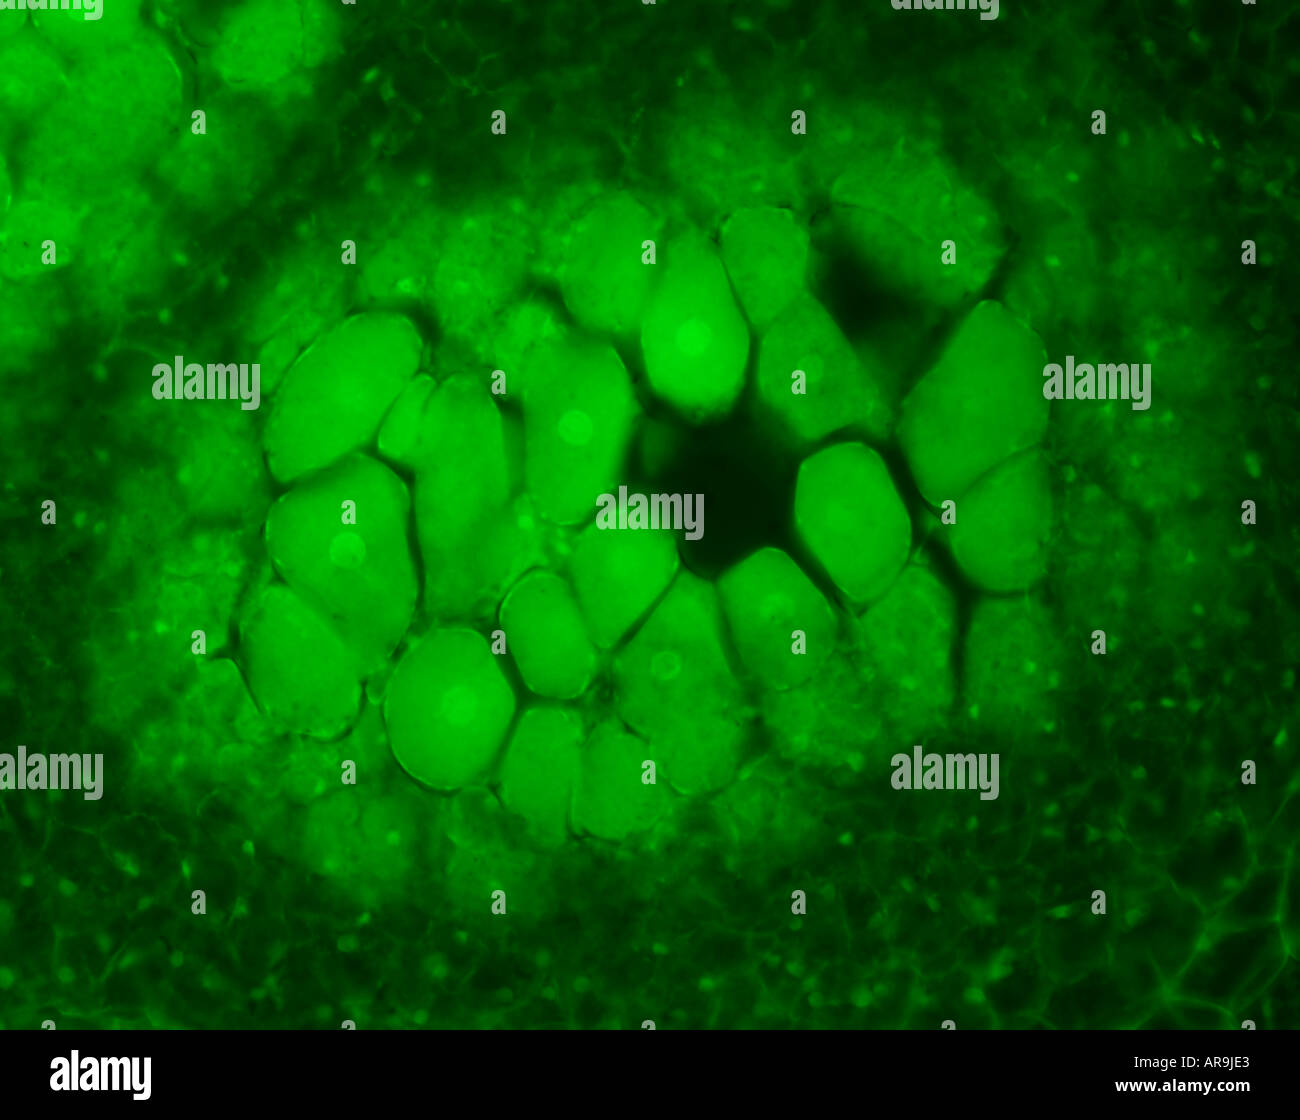 Biologia cellulare di gruppi di cellule diverse che lavorano insieme in verde Foto Stock